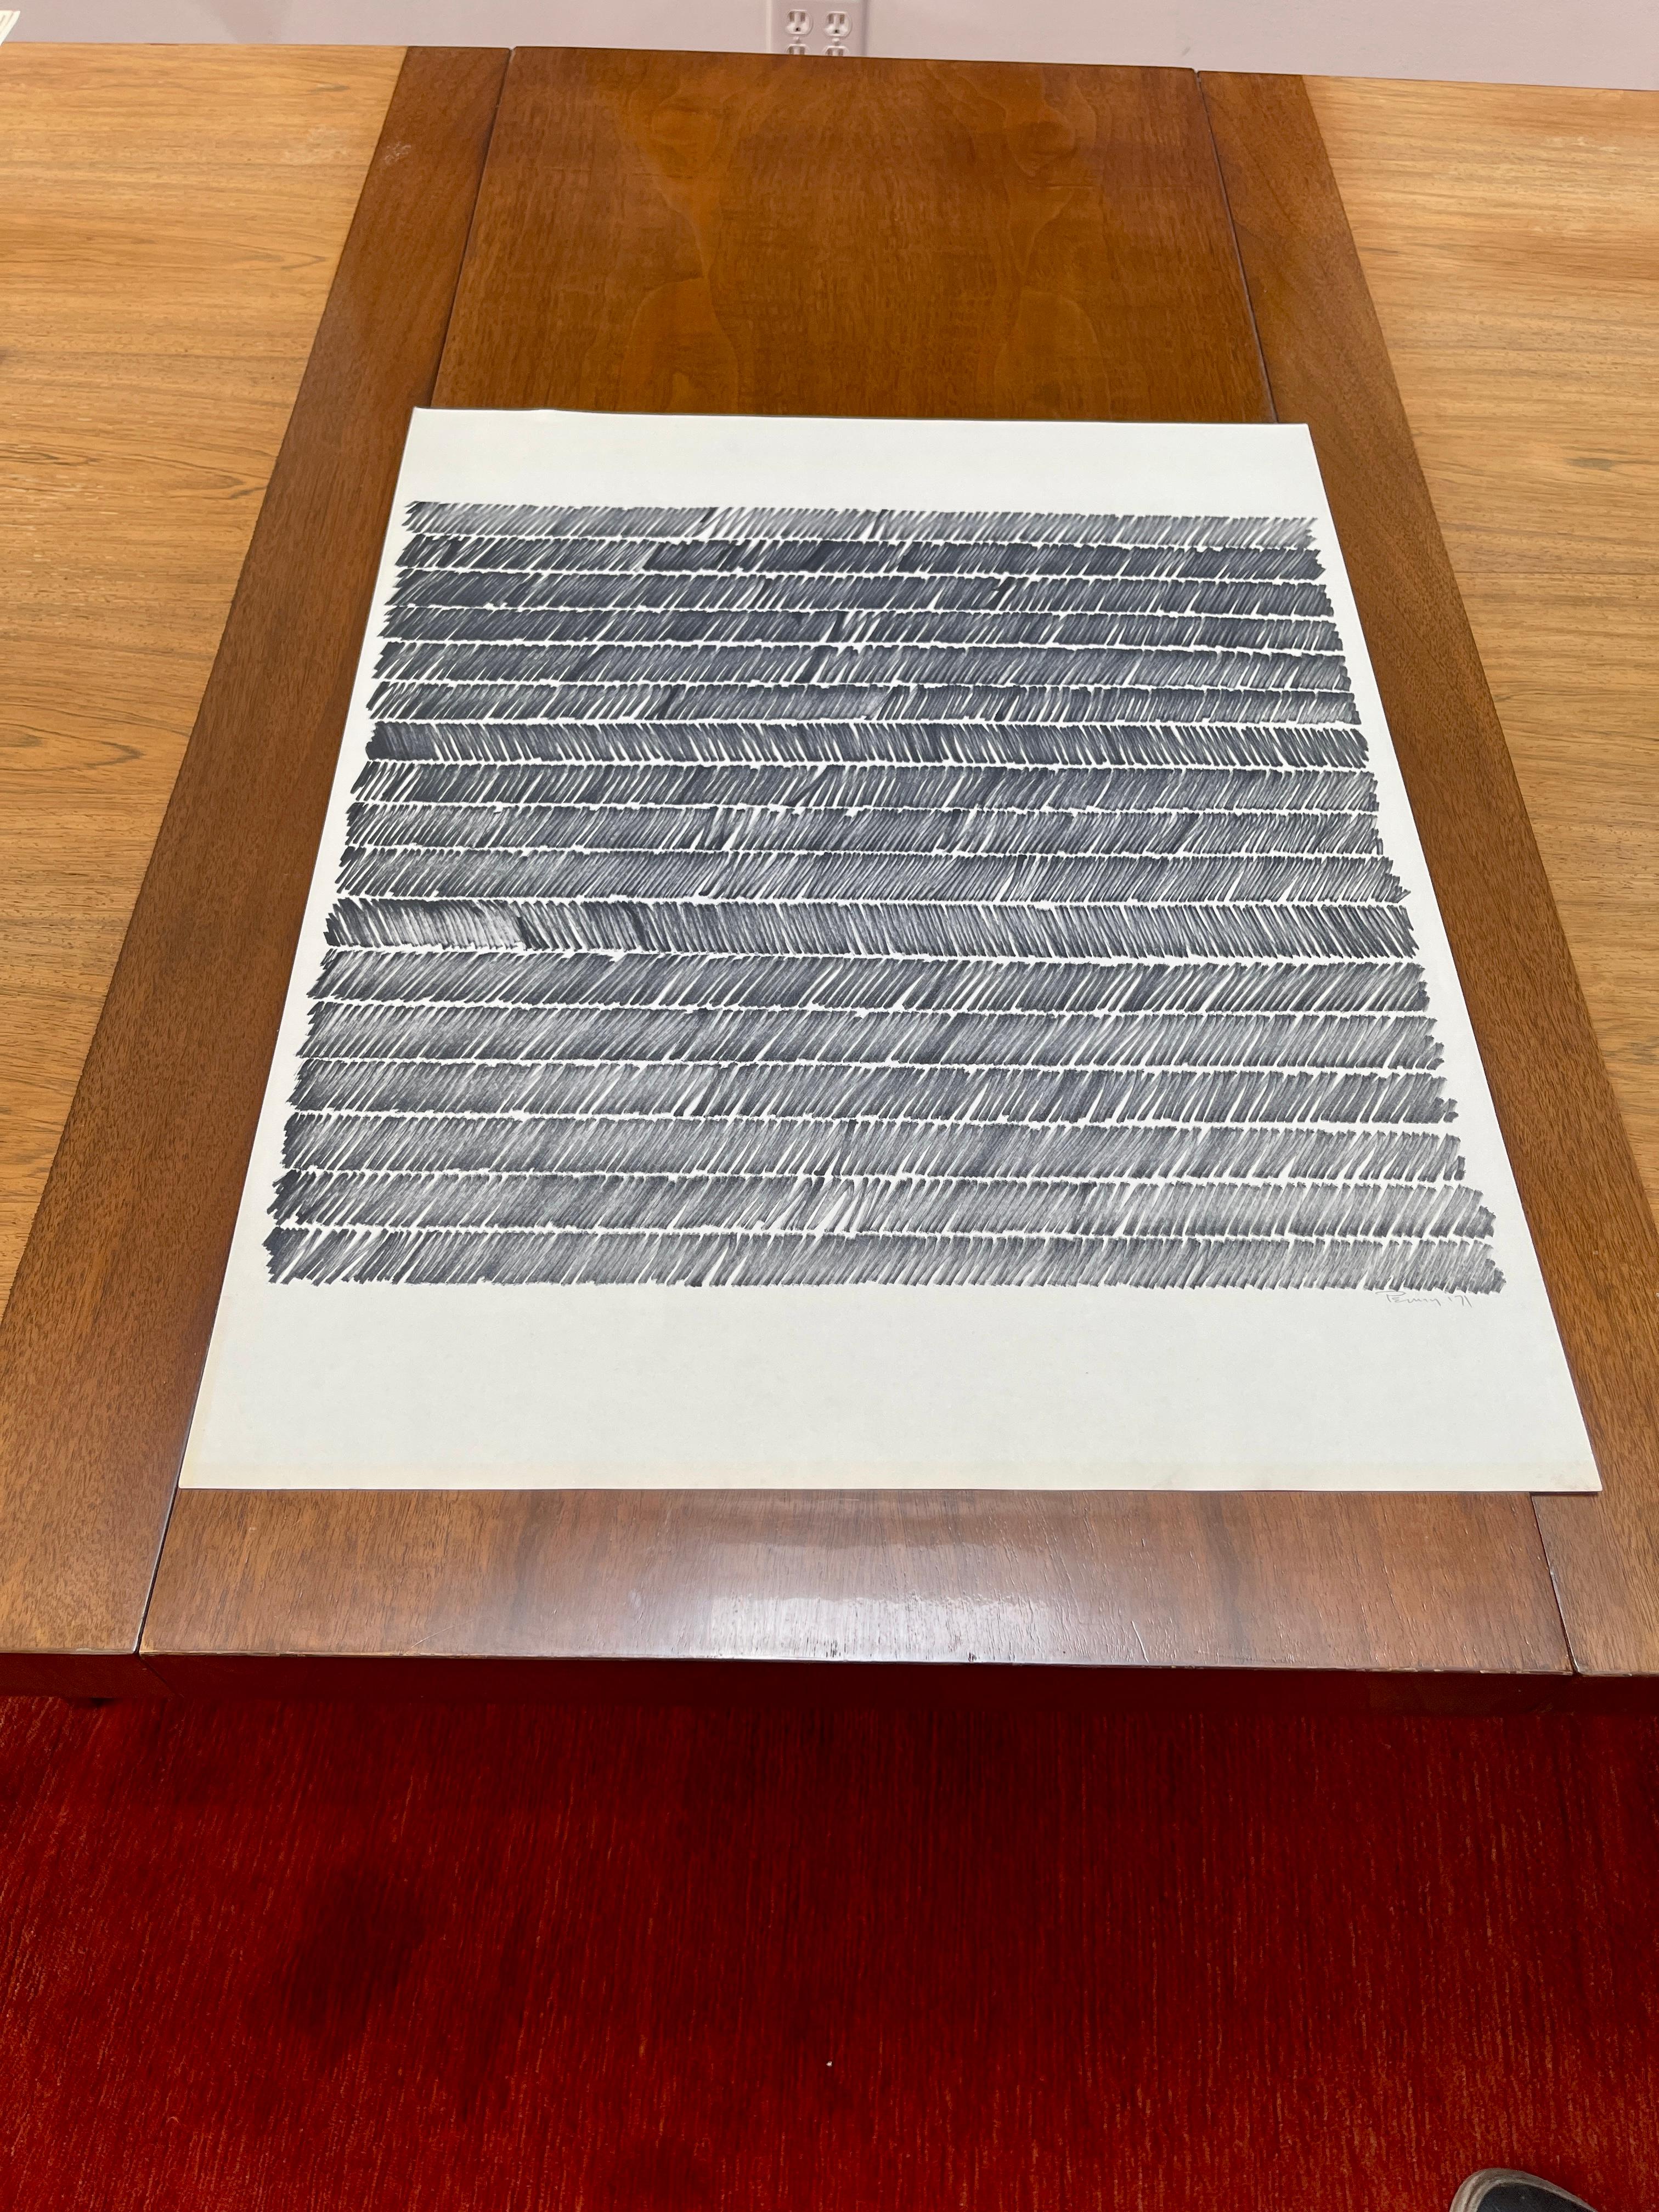 Mit Bleistift signierte und datierte Originalzeichnung von Aubrey Penny 1971 aus der Serie Reflection #6021.

Aubrey Penny (Amerikaner, 1917-2000) war ein innovativer abstrakter Künstler aus Kalifornien, der mit einer Vielzahl von Medien arbeitete.